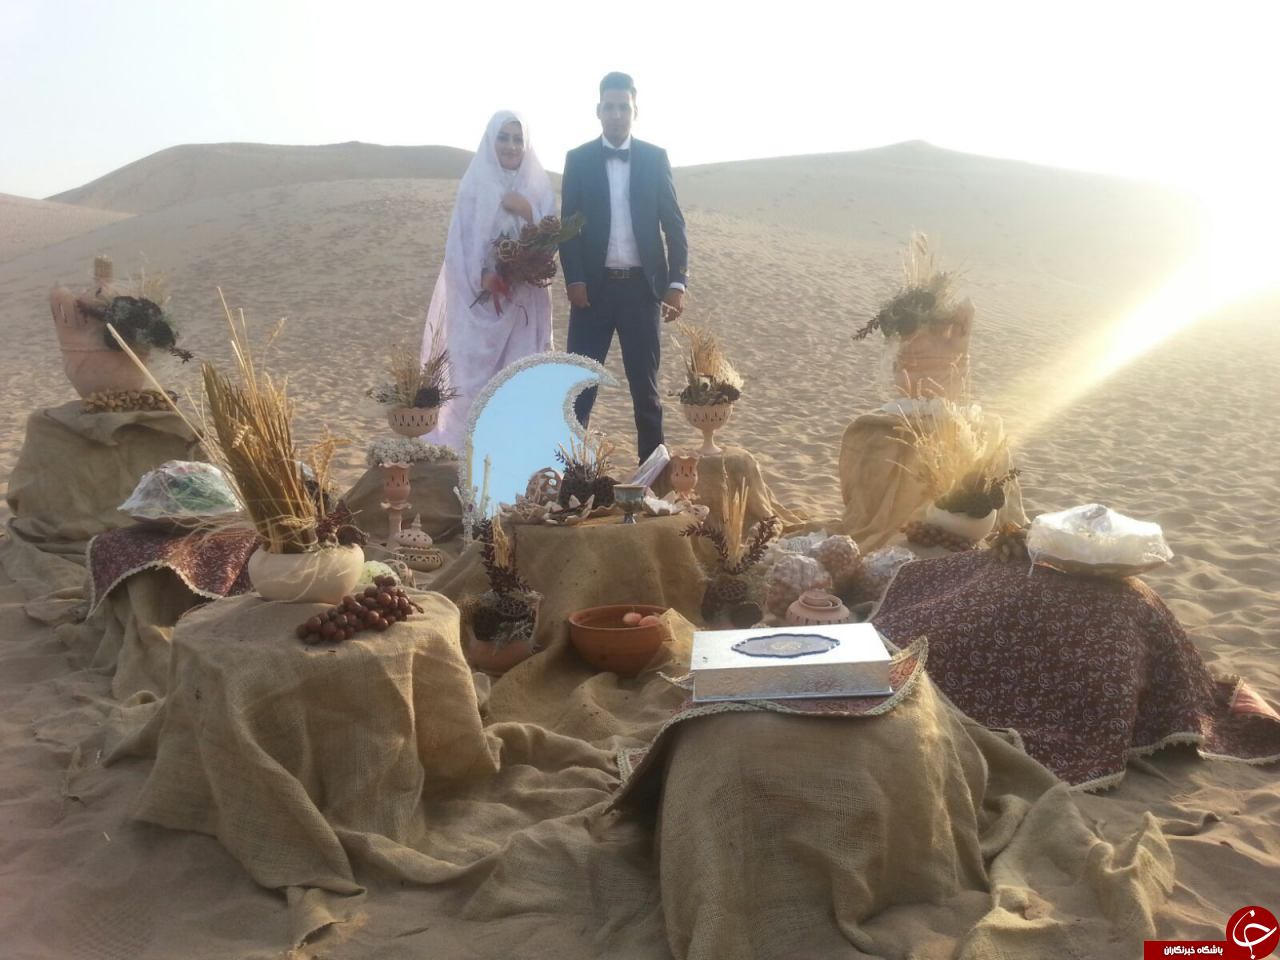 ورژن جدید عروسی در کویر یزد + عکس